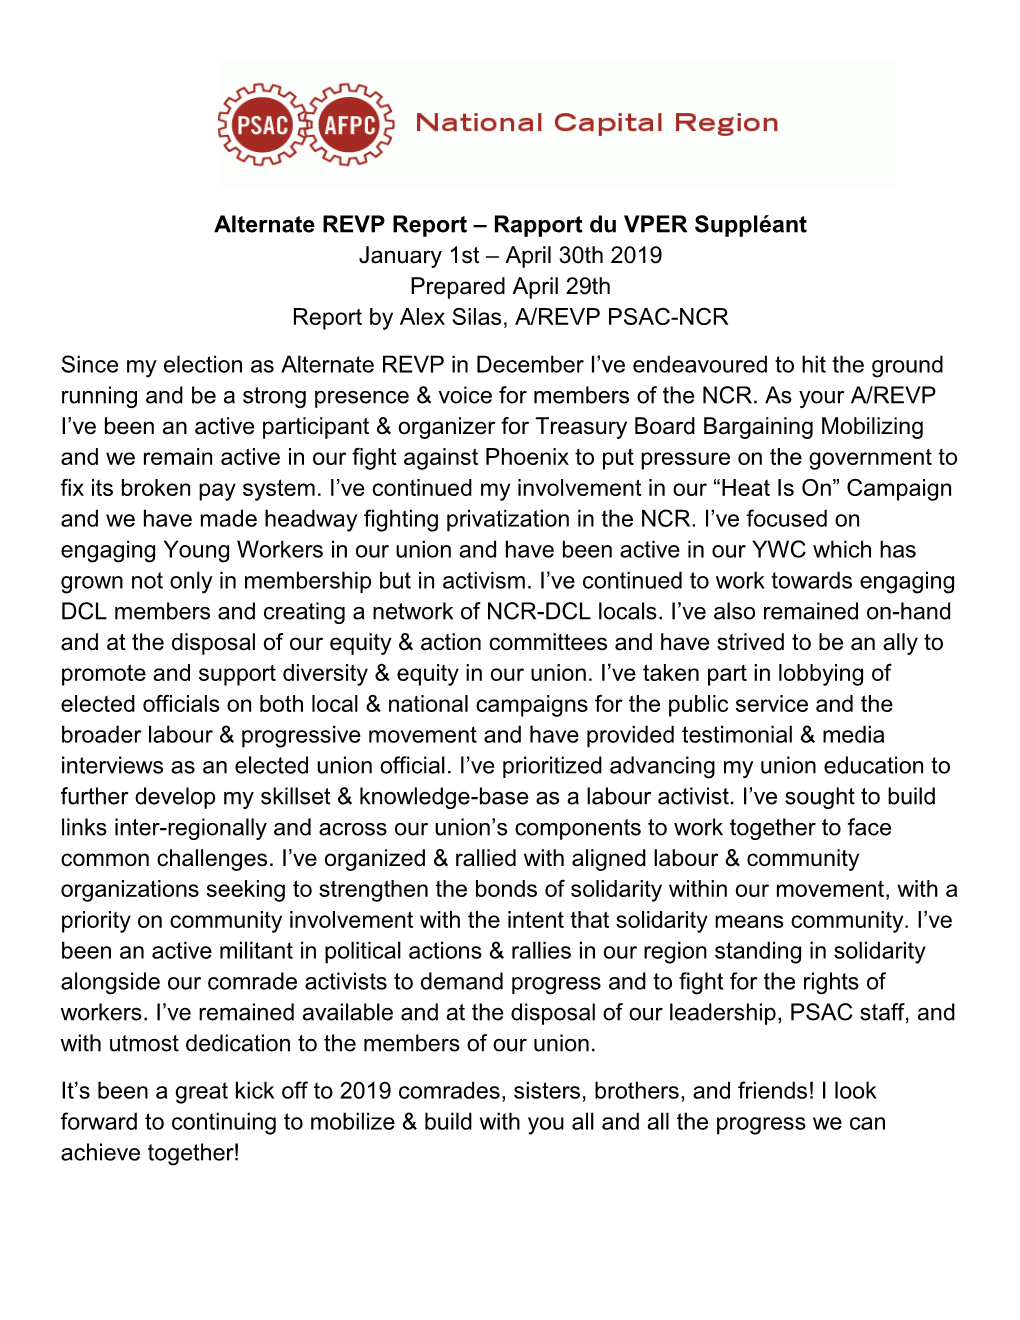 Alternate REVP Report – Rapport Du VPER Suppléant January 1St – April 30Th 2019 Prepared April 29Th Report by Alex Silas, A/REVP PSAC-NCR